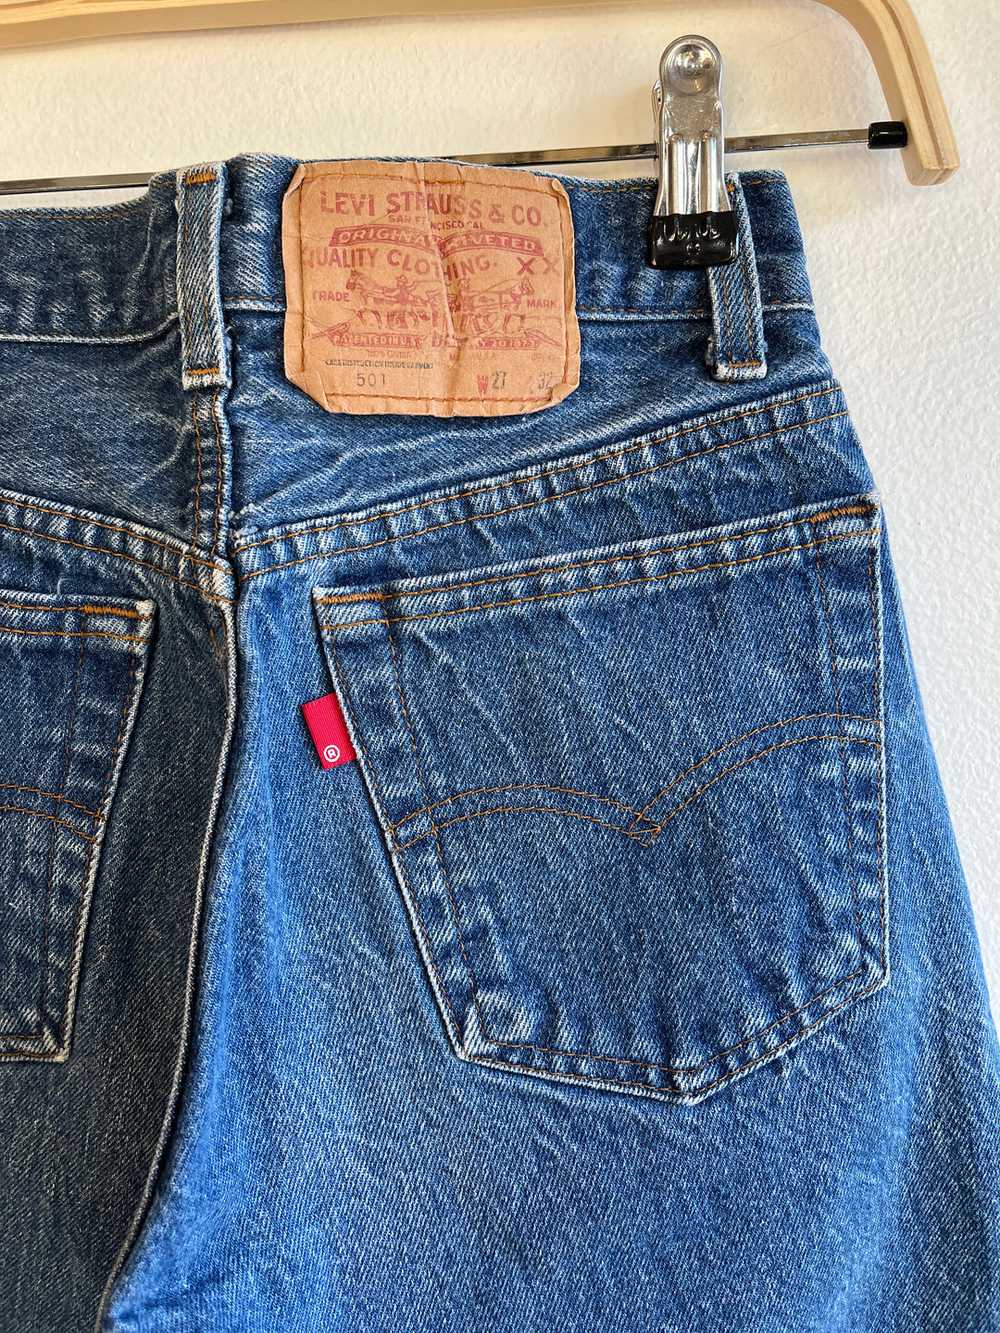 Vintage 1980’s Levi’s 501 Denim Jeans - image 2